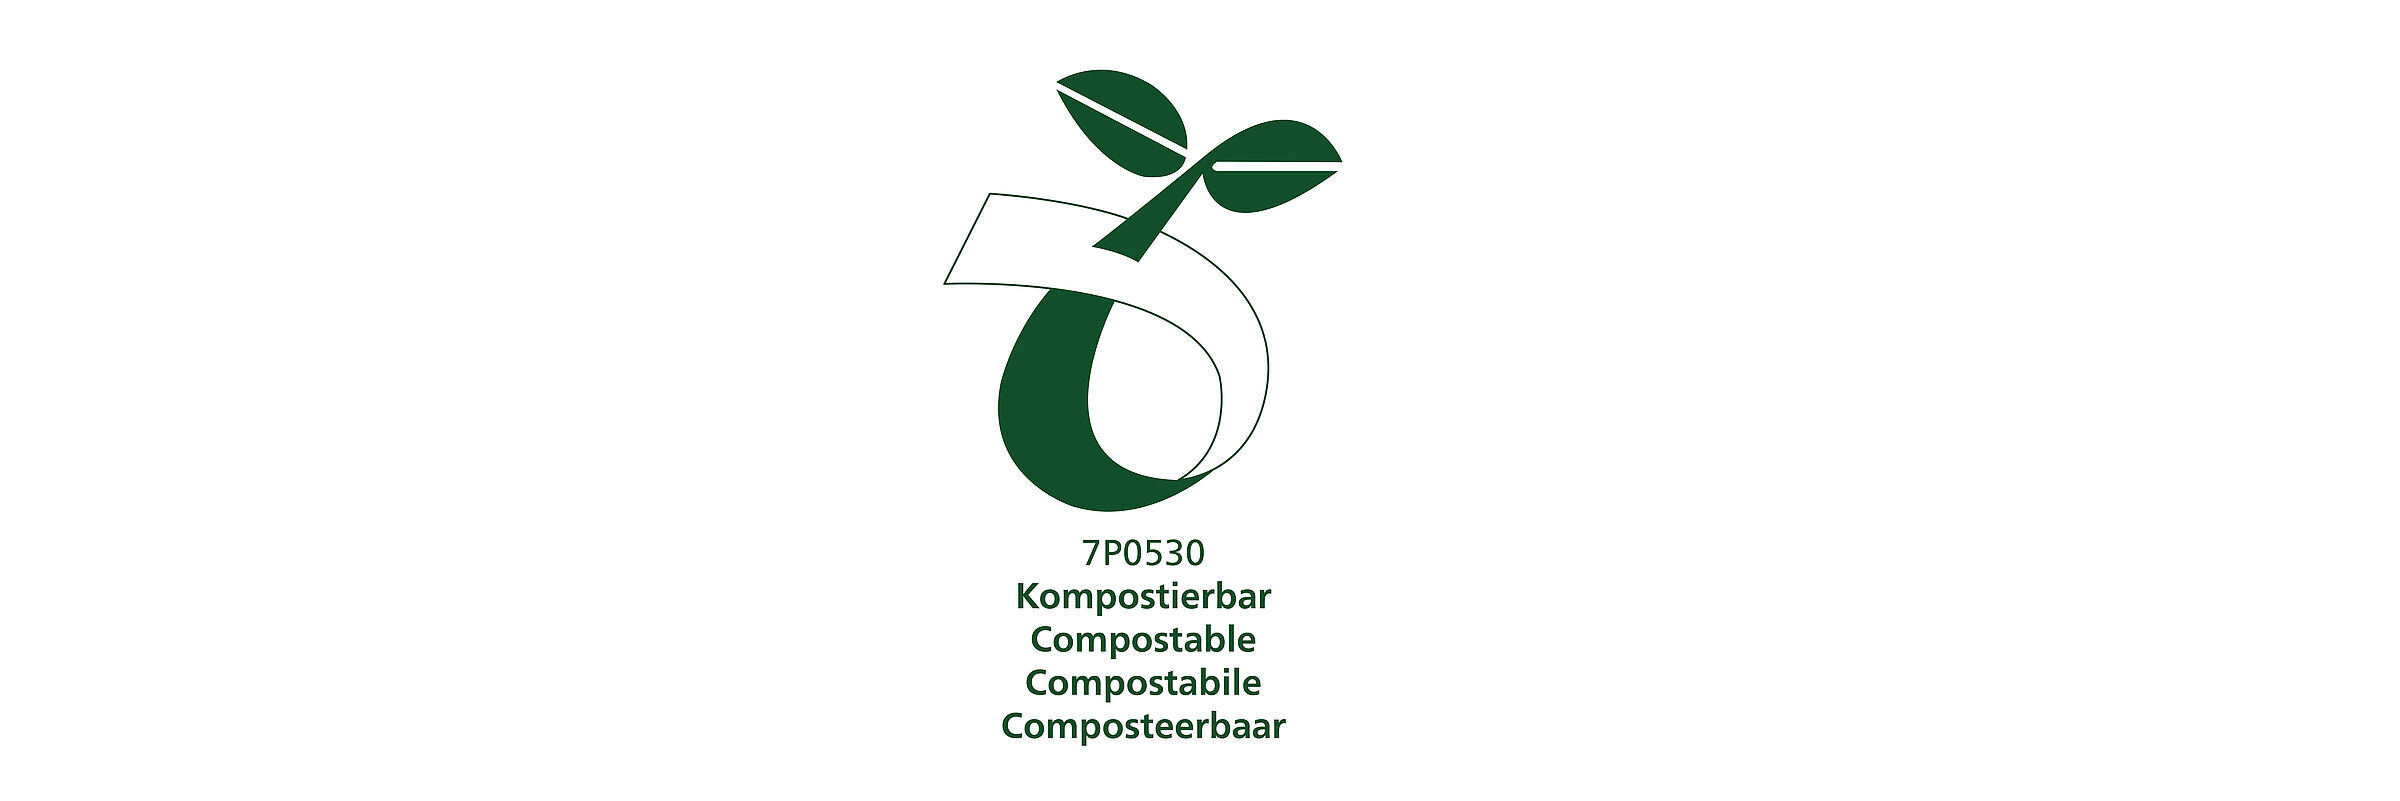 csm_logo-compostable_Mesa_de_trabajo_1_dde213b12f.jpg